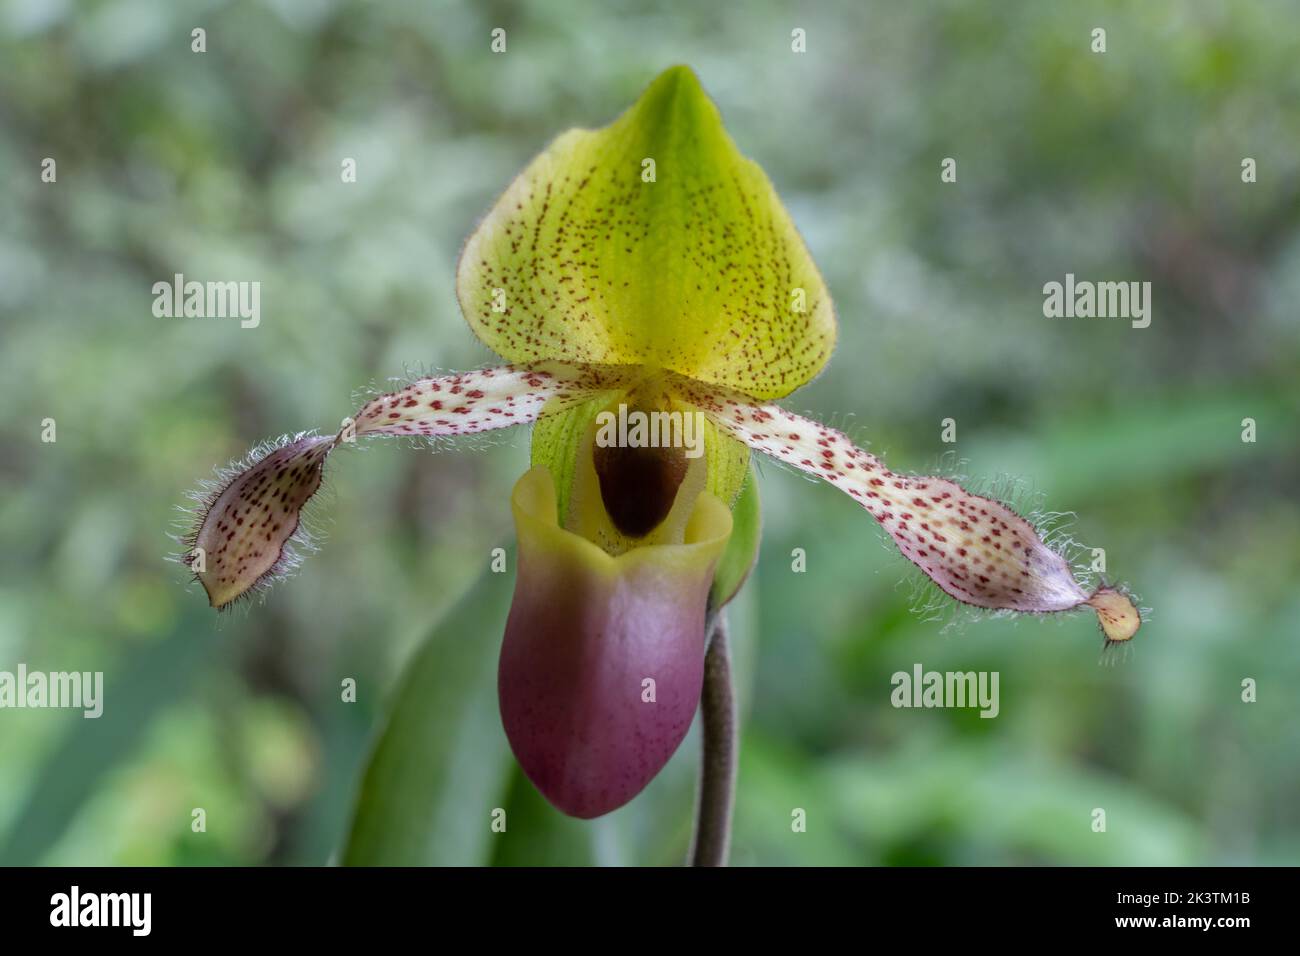 Nahaufnahme der bunten gelb-grünen und lila Dame Slipper Orchidee paphiopedilum moquetteanum (Arten) Blume auf natürlichem Hintergrund isoliert Stockfoto